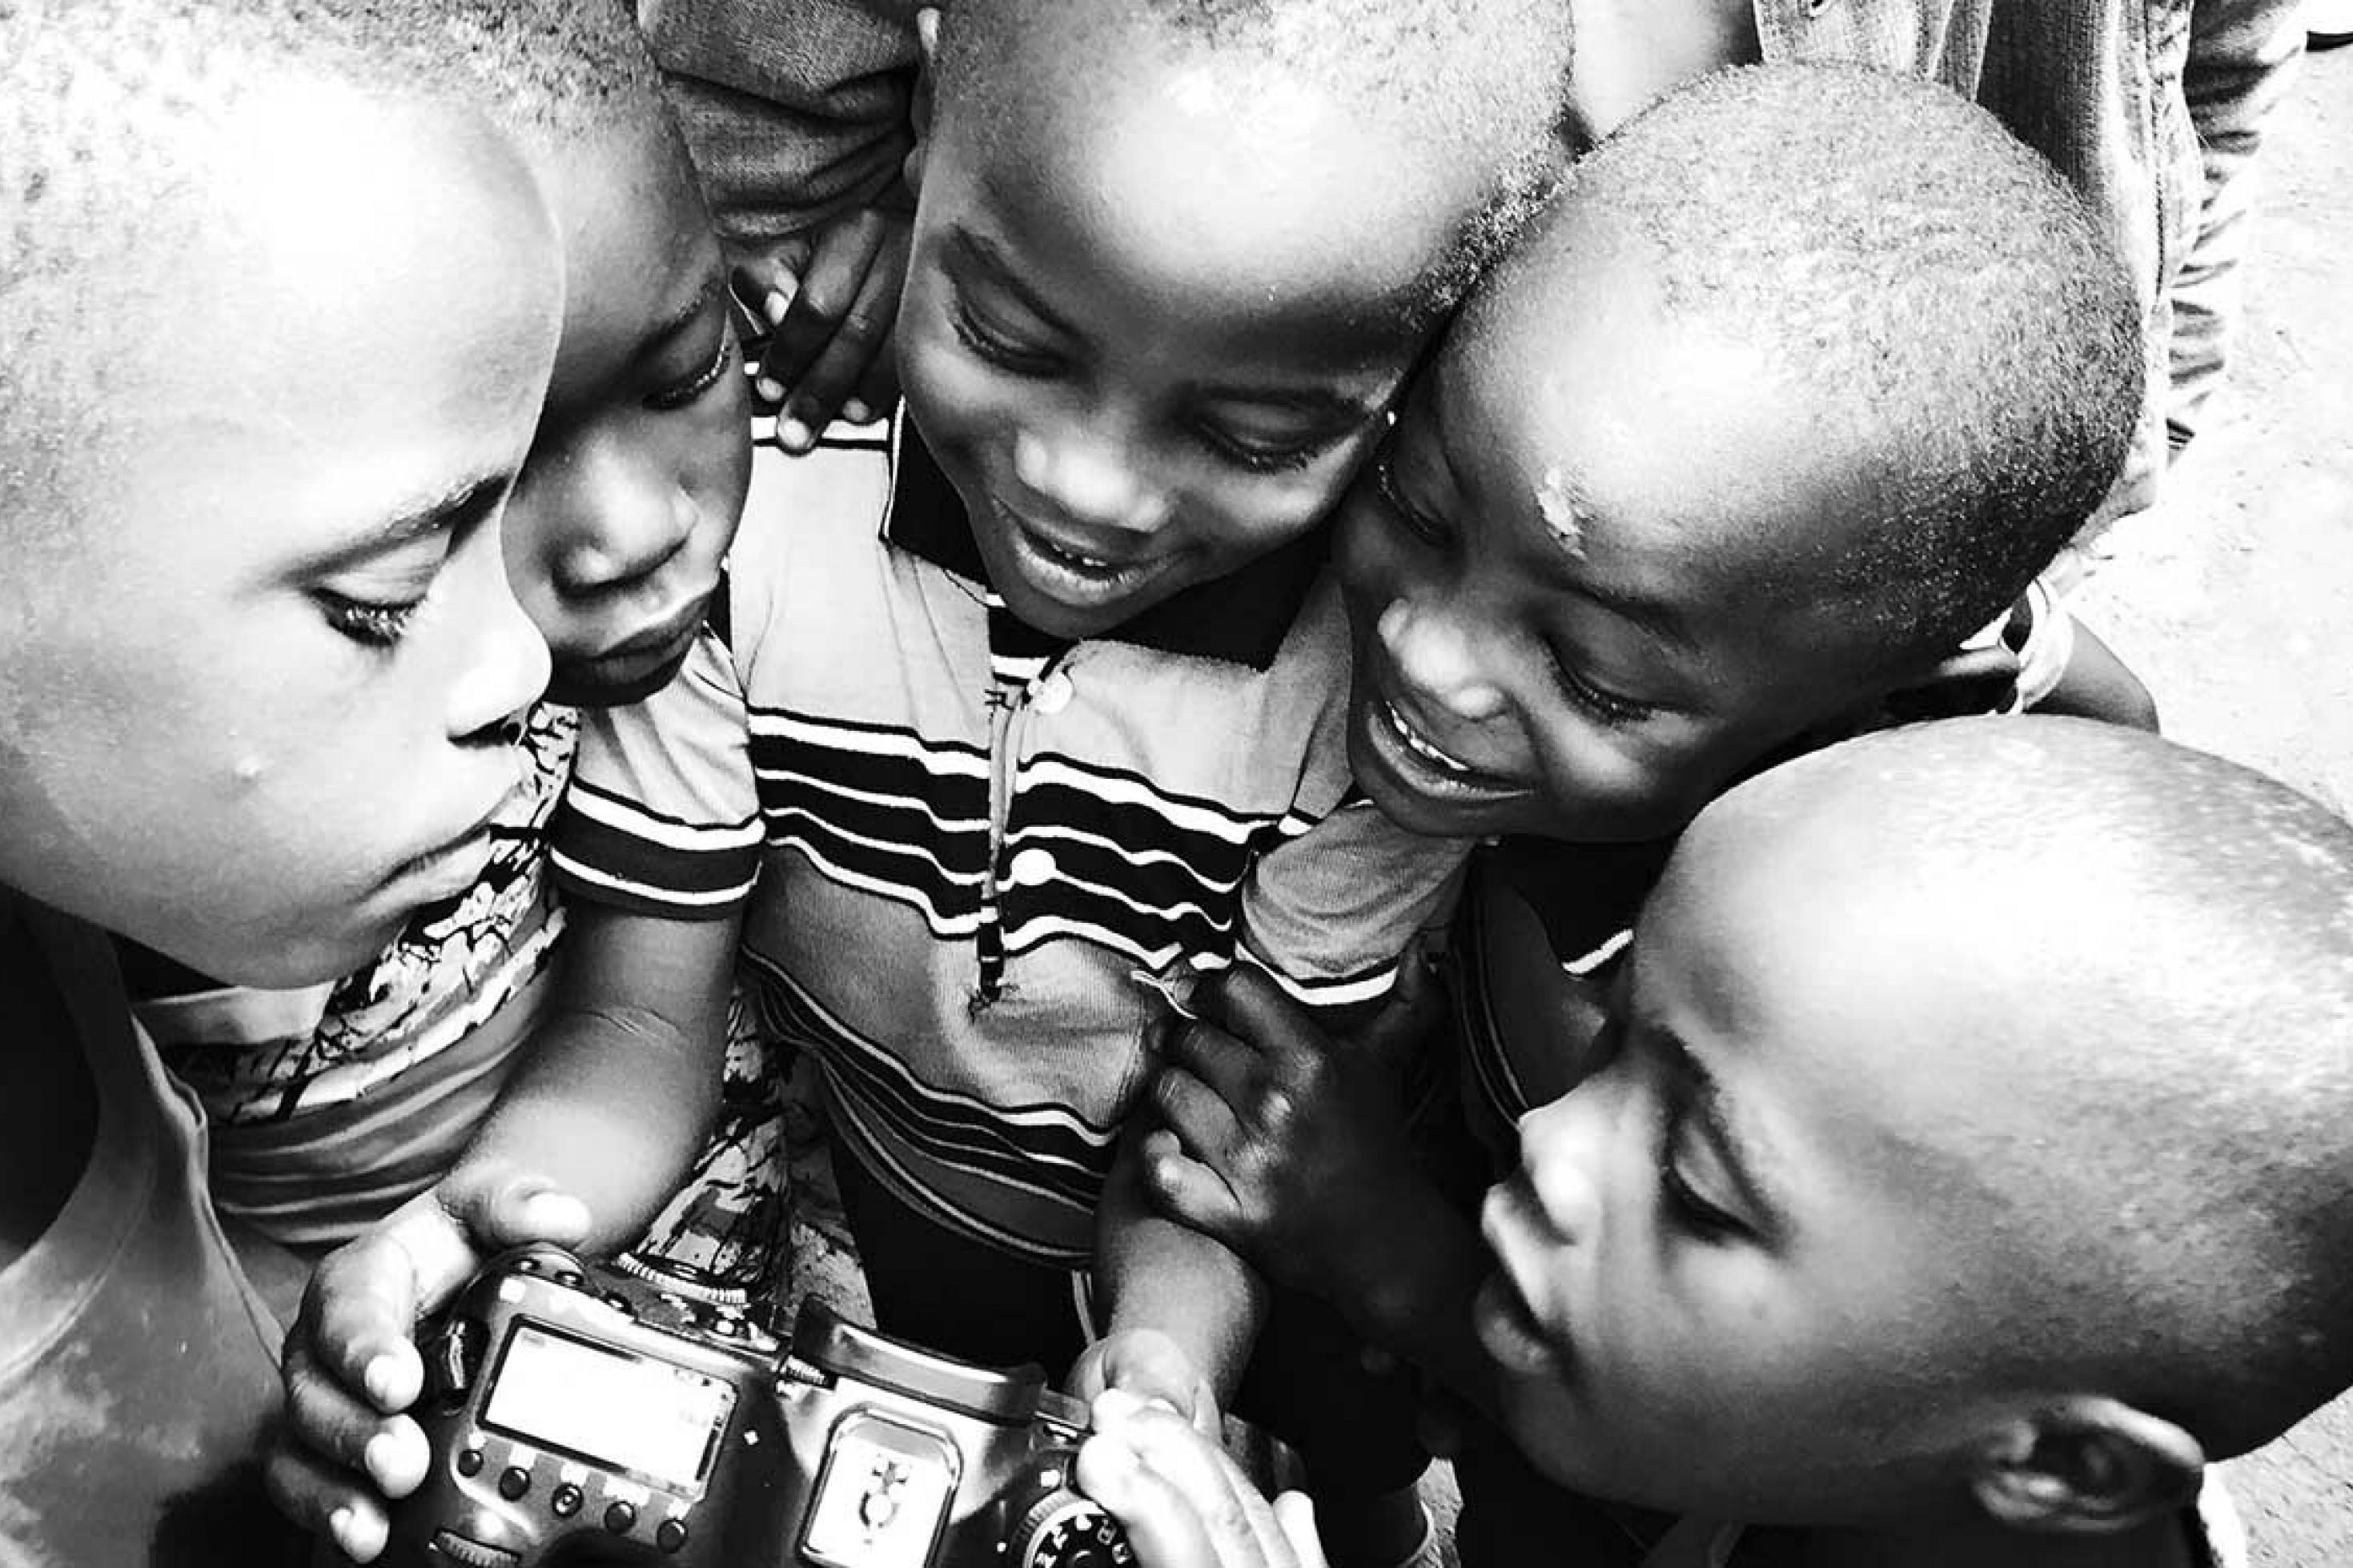 5 Kinder stehen kreisförmig um eine DSLR-Kamera herum und betrachten neugierig, was darauf zu sehen ist.